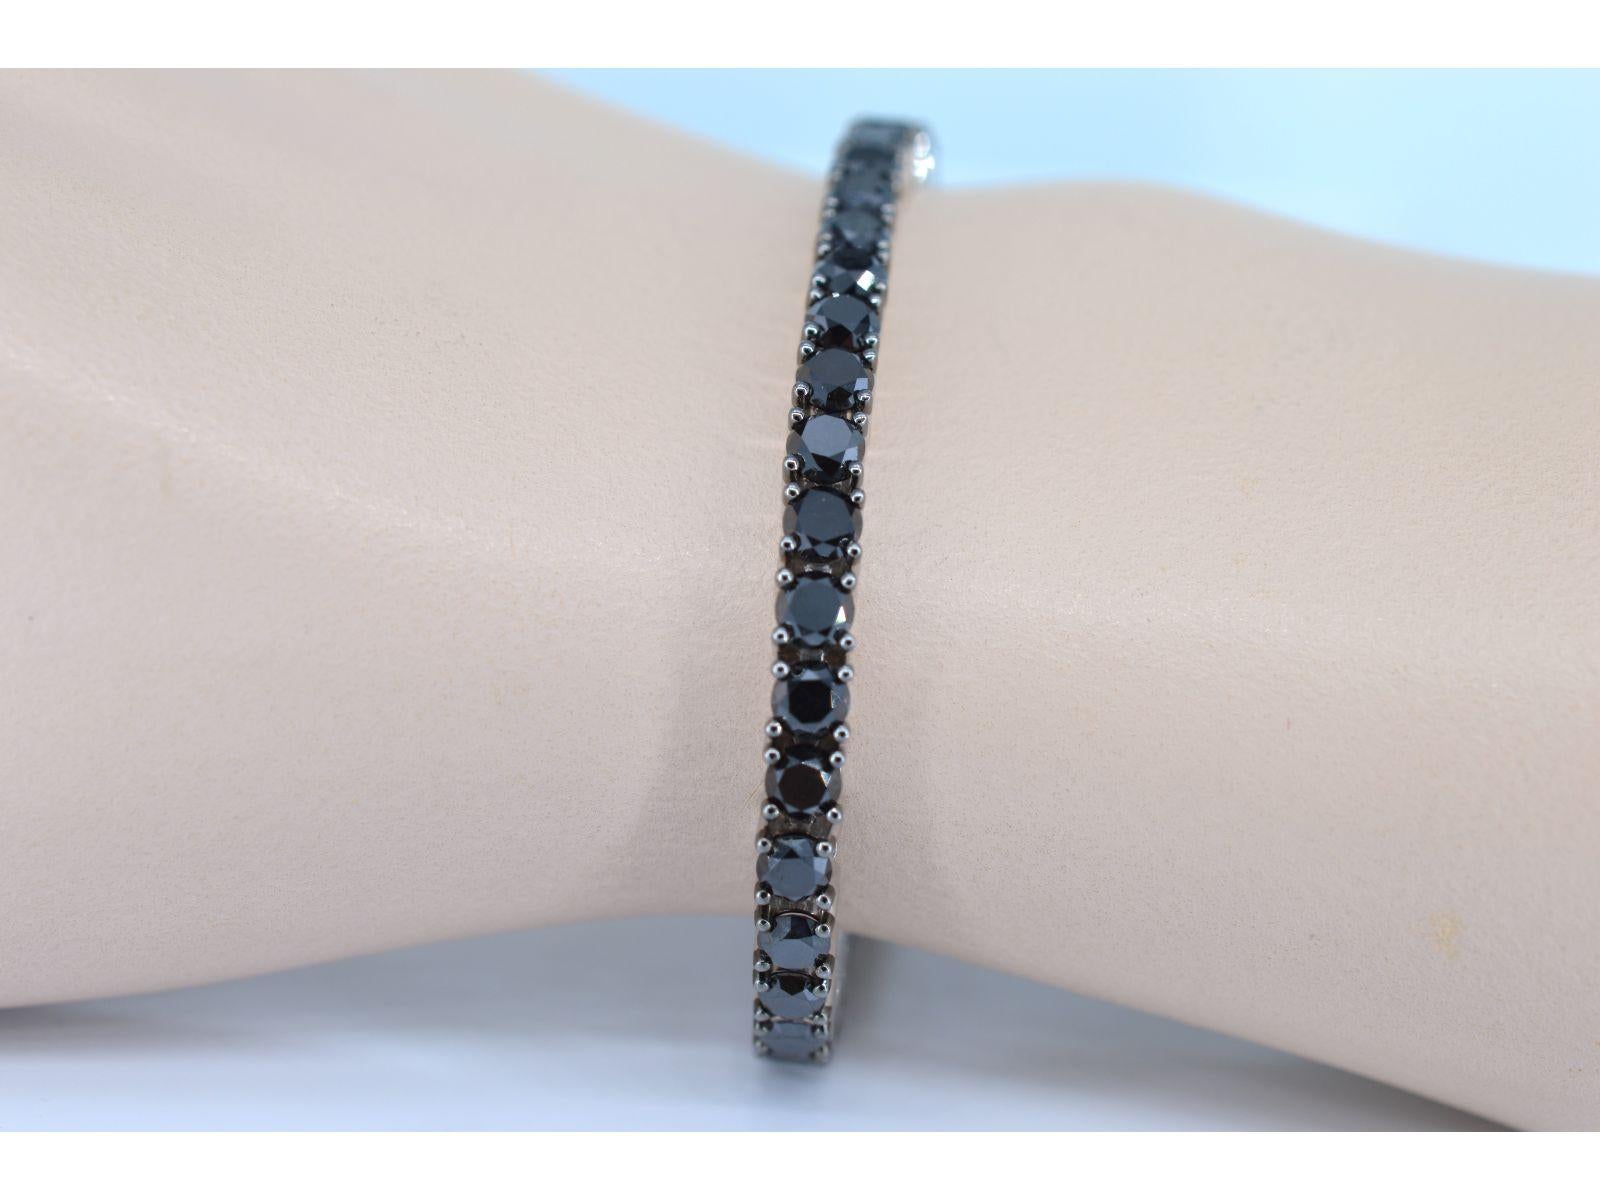 Il s'agit d'un luxueux bracelet orné de 44 diamants noirs, d'un poids total de 16,50 carats. Les diamants sont taillés dans le style brillant, ce qui renforce leur éclat et la réflexion de la lumière. La couleur des diamants est un noir riche, avec